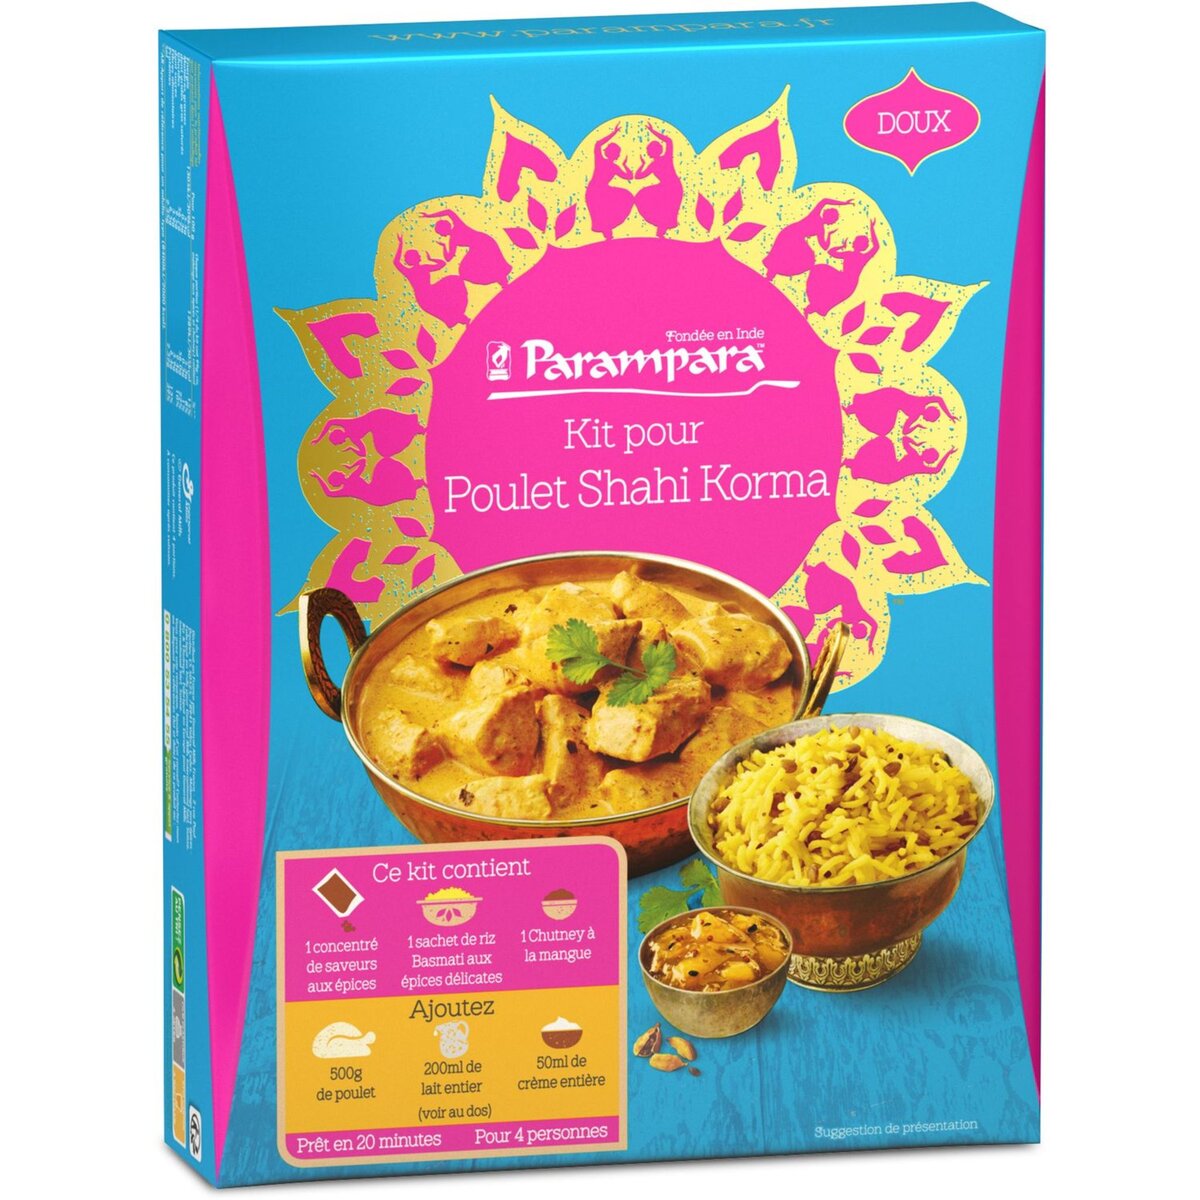 PARAMPARA Parampara Kit pour shahi korma doux: riz basmati, concentré d'épices 395g 4 personnes 395g